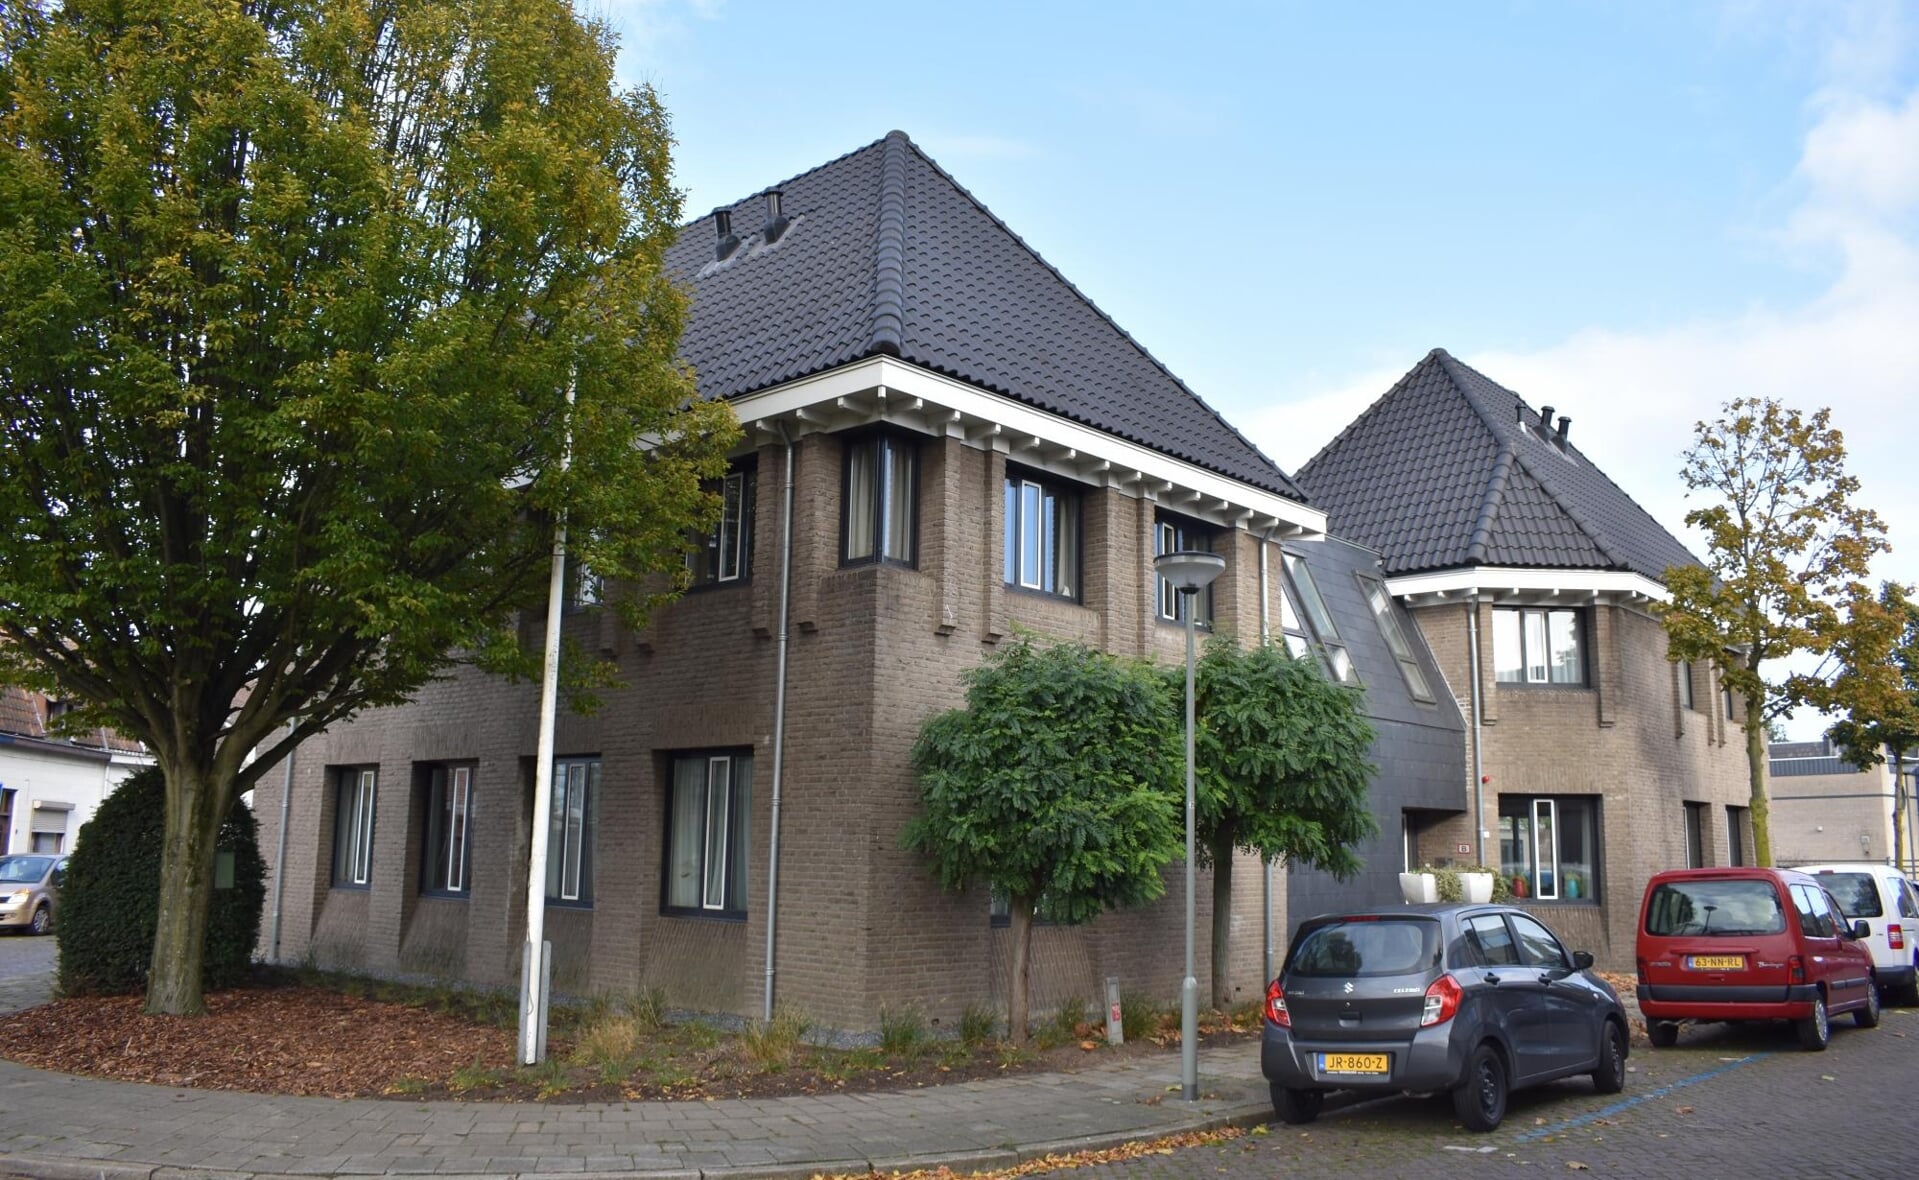 Verzorgingshuis Herbergier aan de Baroniestraat in Boxtel is sinds het voorjaar van 2016 gevestigd in het pand waarin voorheen het kantoor van woonstichting Joost was gevestigd.